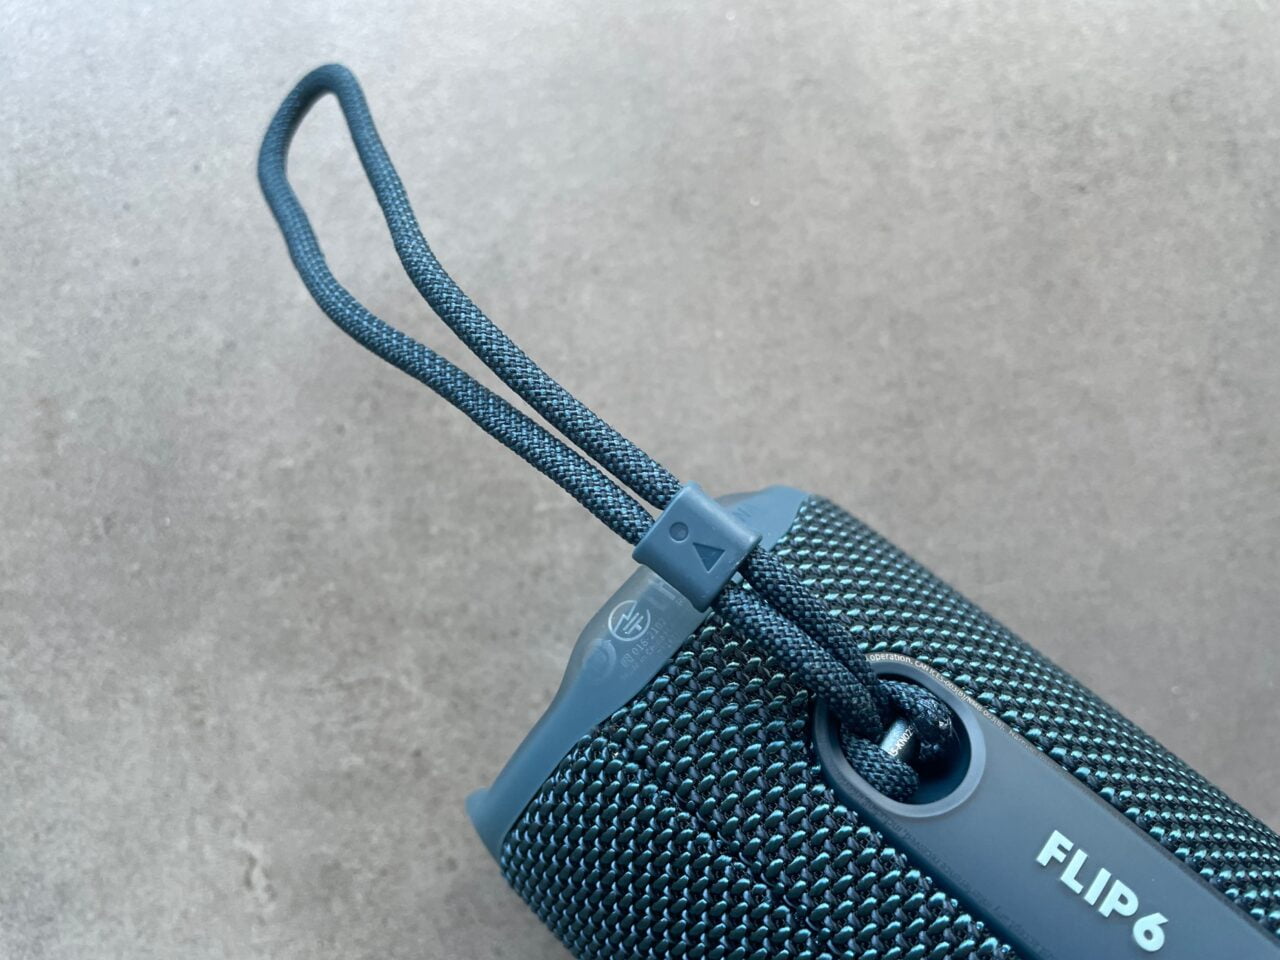 Przenośny głośnik Bluetooth w niebieskim kolorze z pętelką uchwytu i widocznym napisem "FLIP 6".